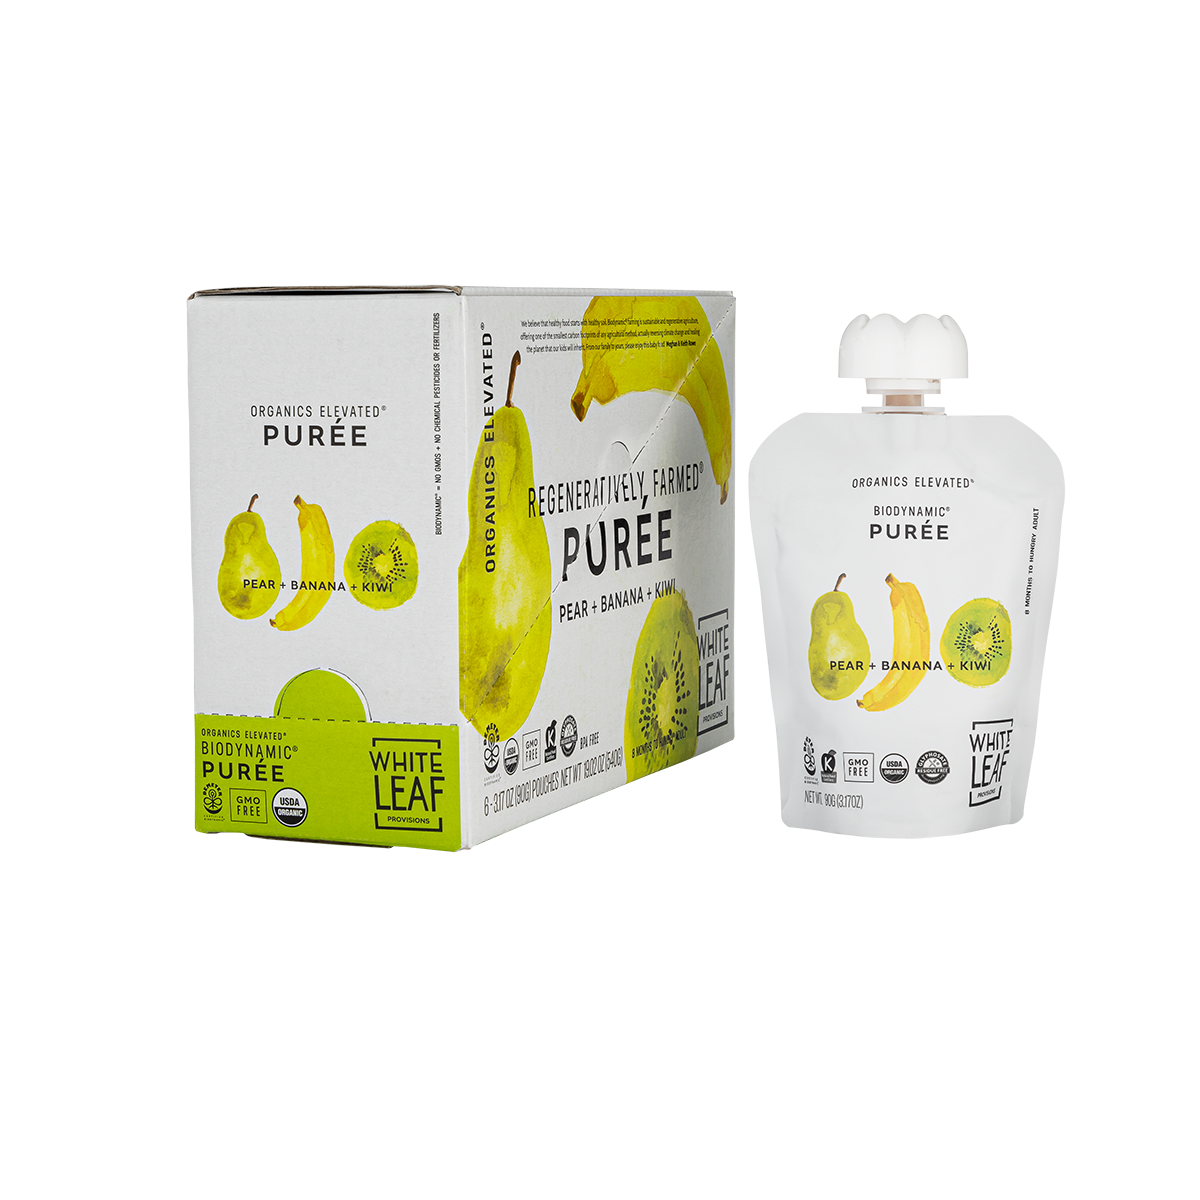 Organic, regeneratively farmed Puree - Pear + Banana + Kiwi